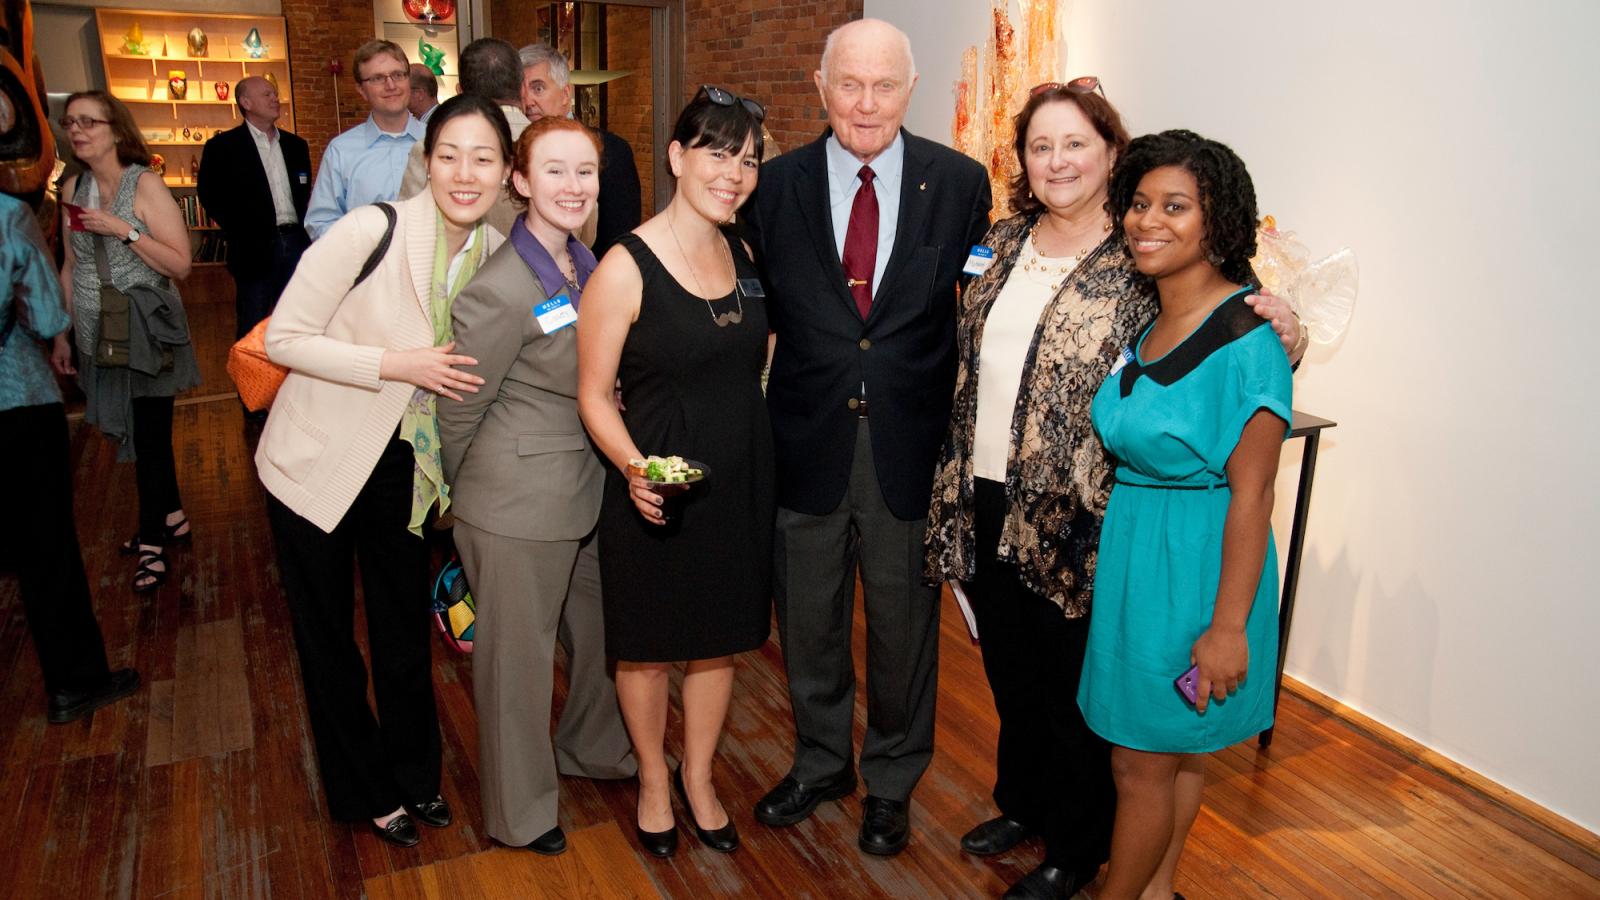 Former astronaut and senator John Glenn mingles with Barnett students